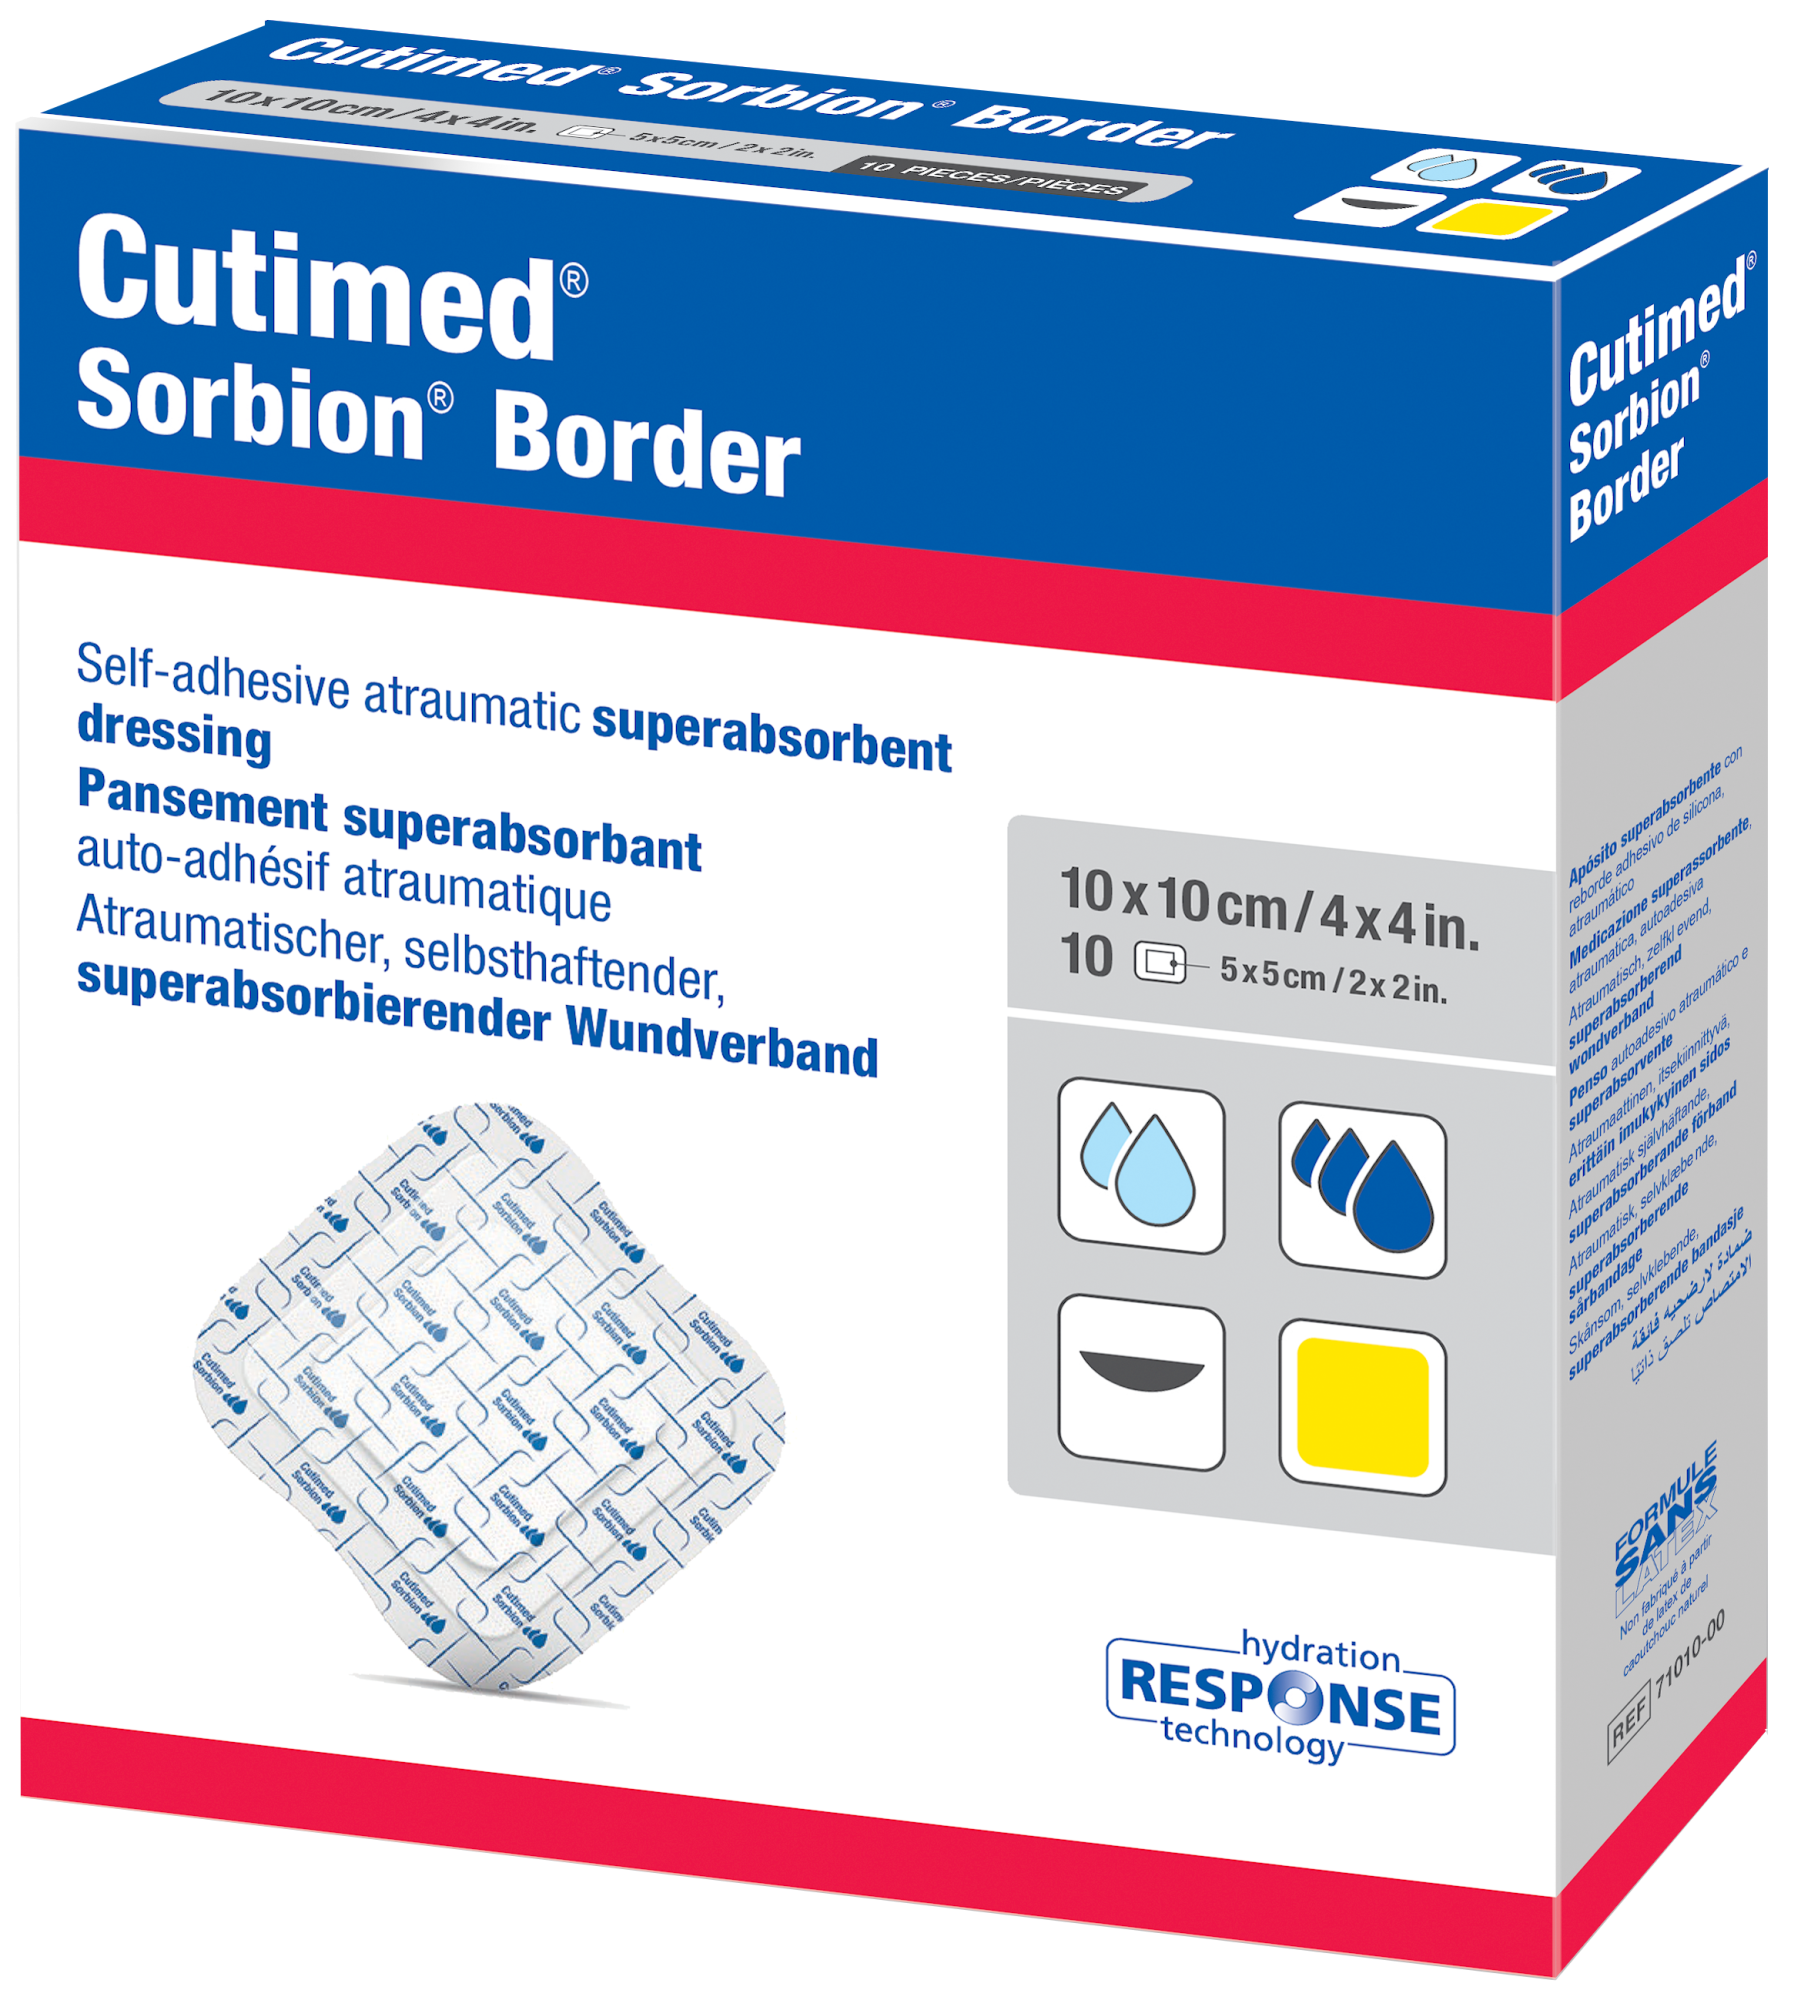 Bilde som viser et pakningsbilde av  Cutimed® Sorbion® Border